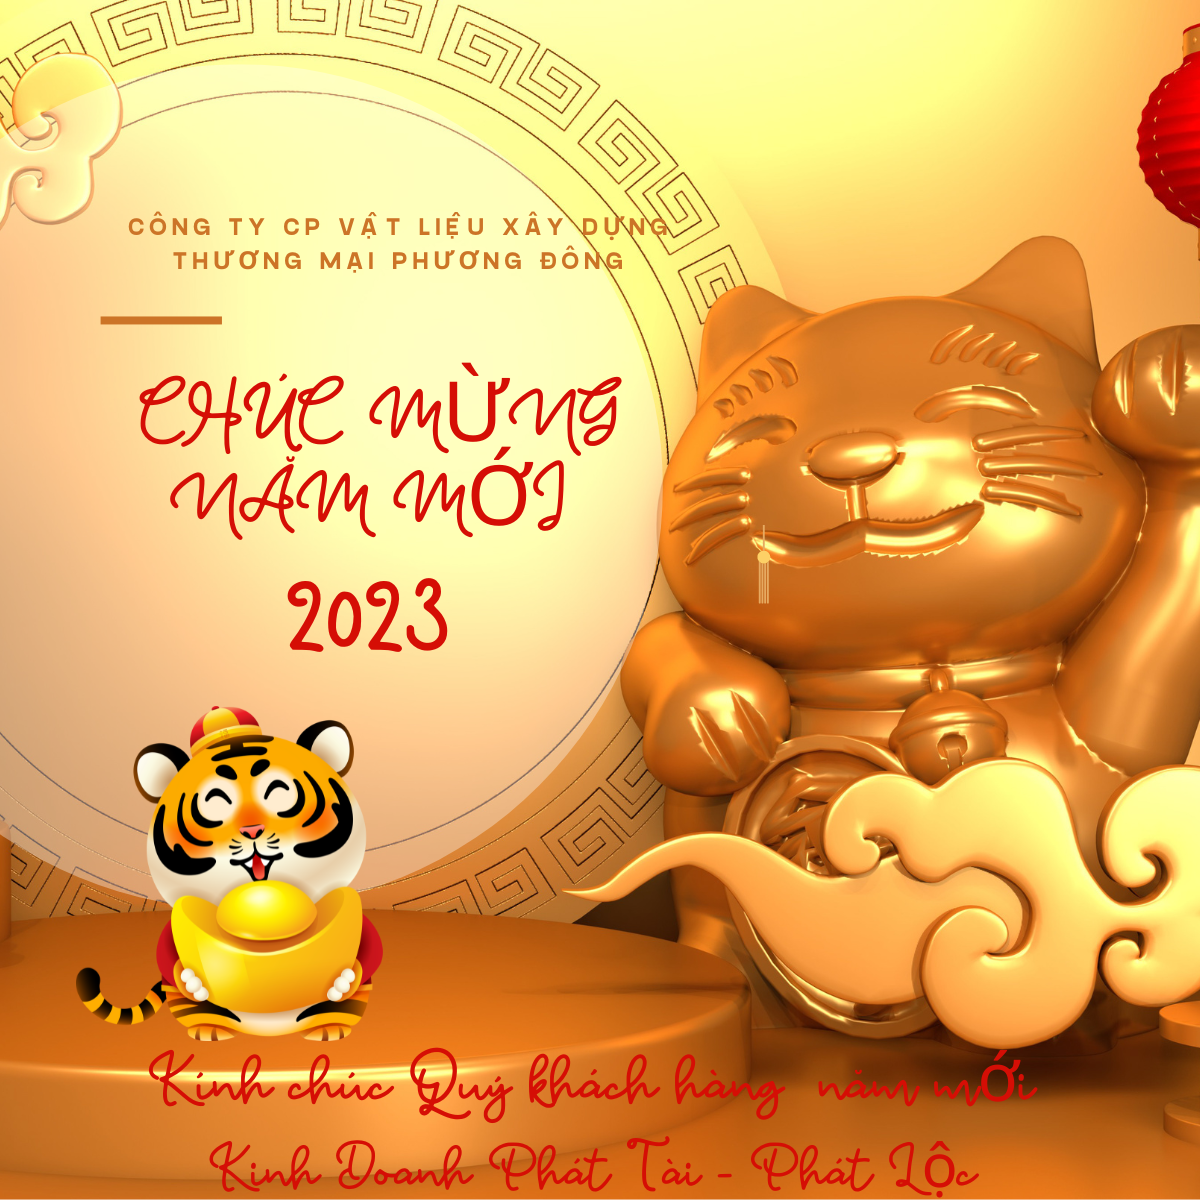 chuc-mung-nam-moi-quy-mao-2023